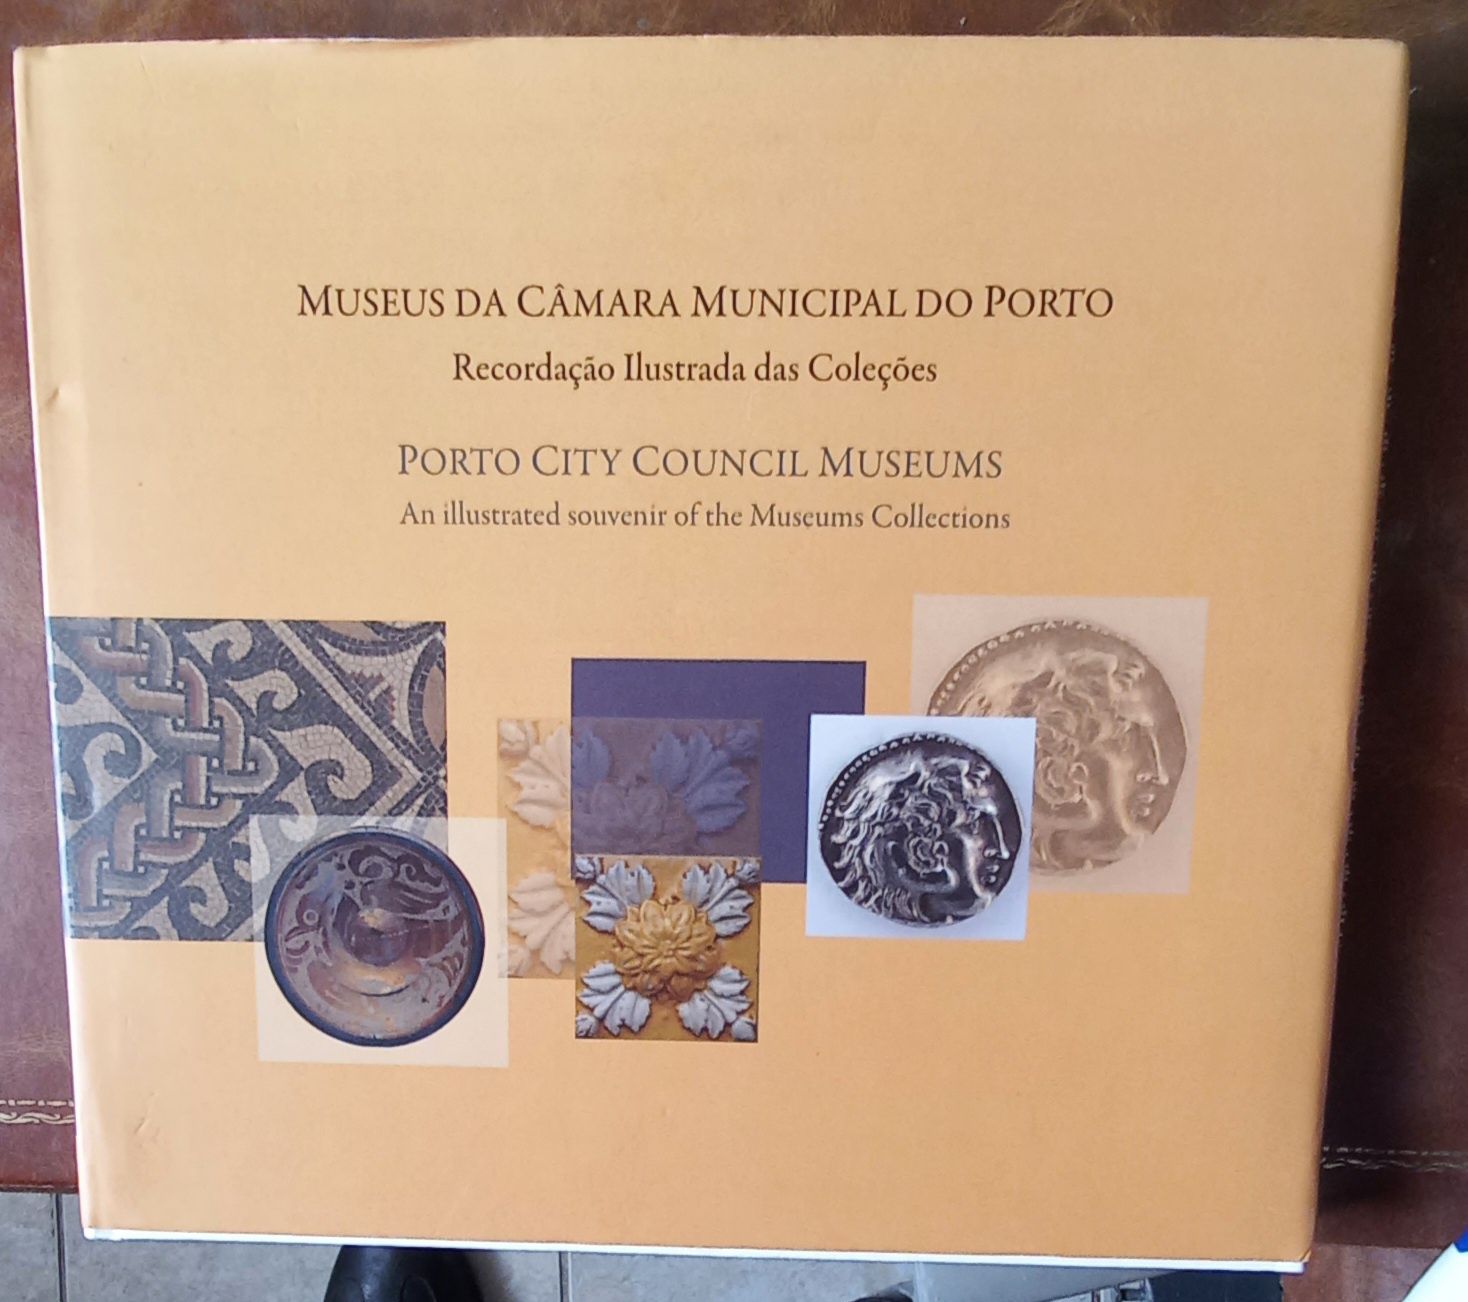 Livro dos Museus da cidade do Porto. PORTES GRÁTIS.